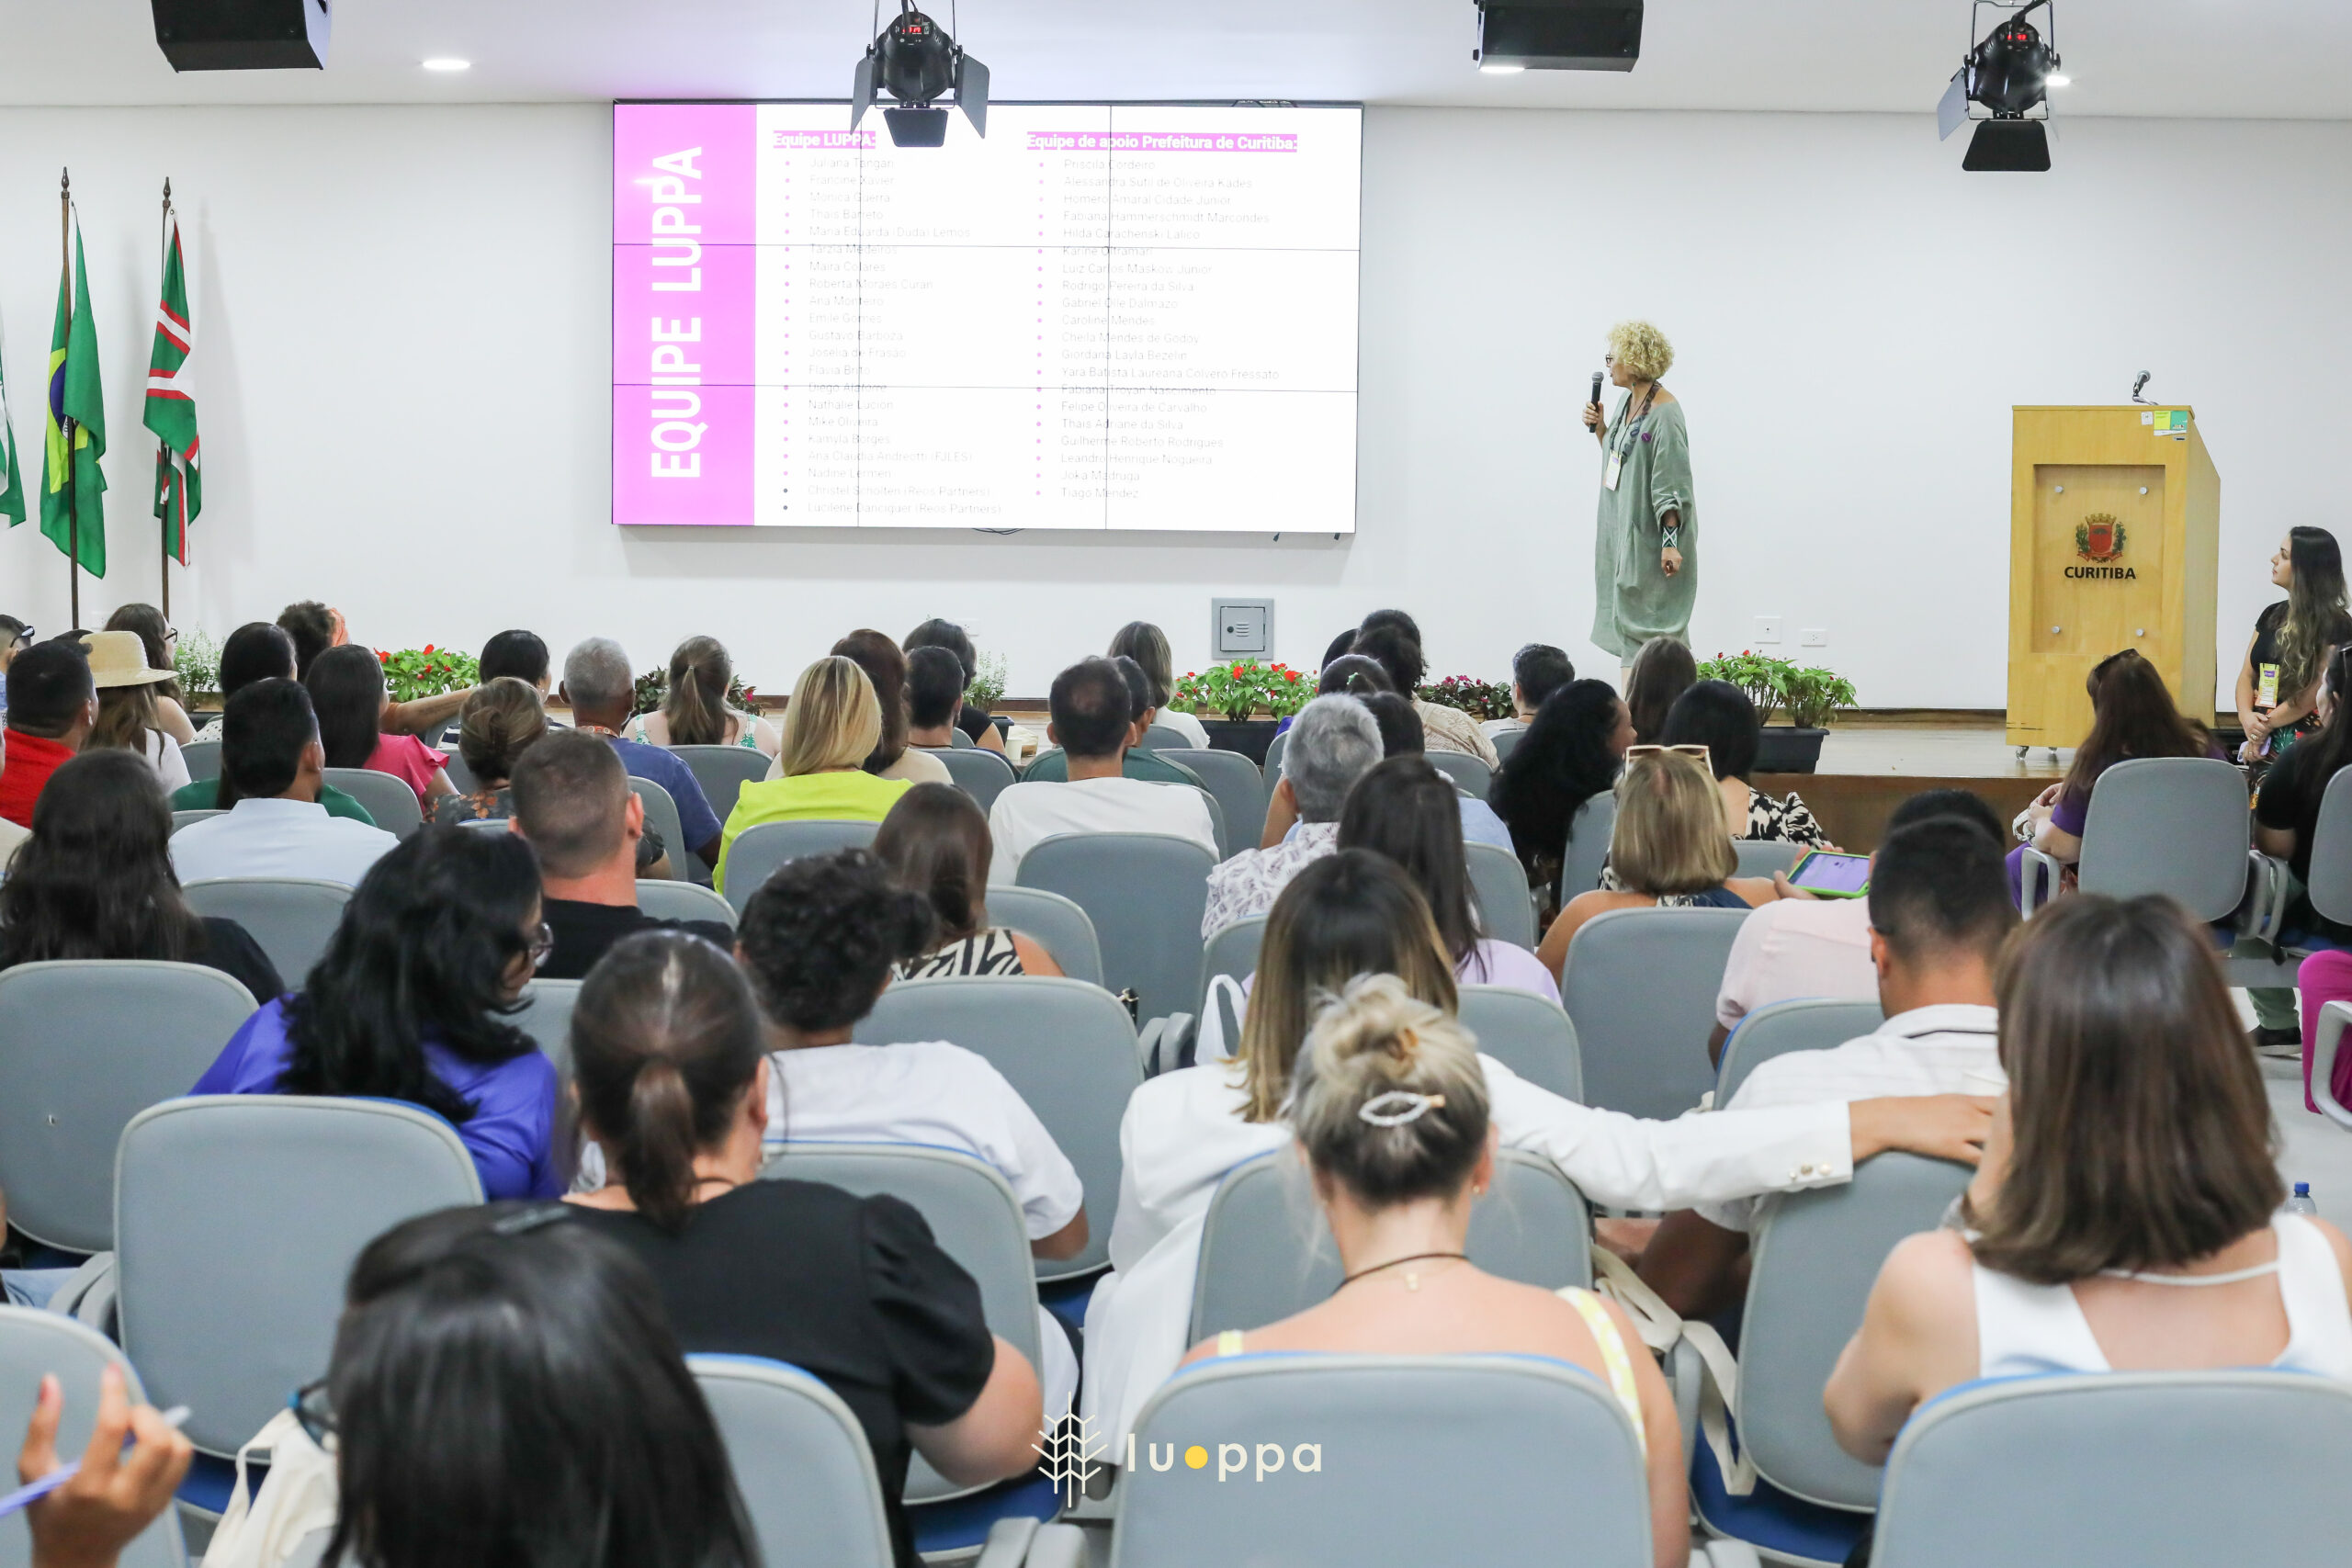 Laboratório de políticas públicas alimentares reuniu mais de 100 gestores municipais de todo Brasil para discutir agenda alimentar urbana